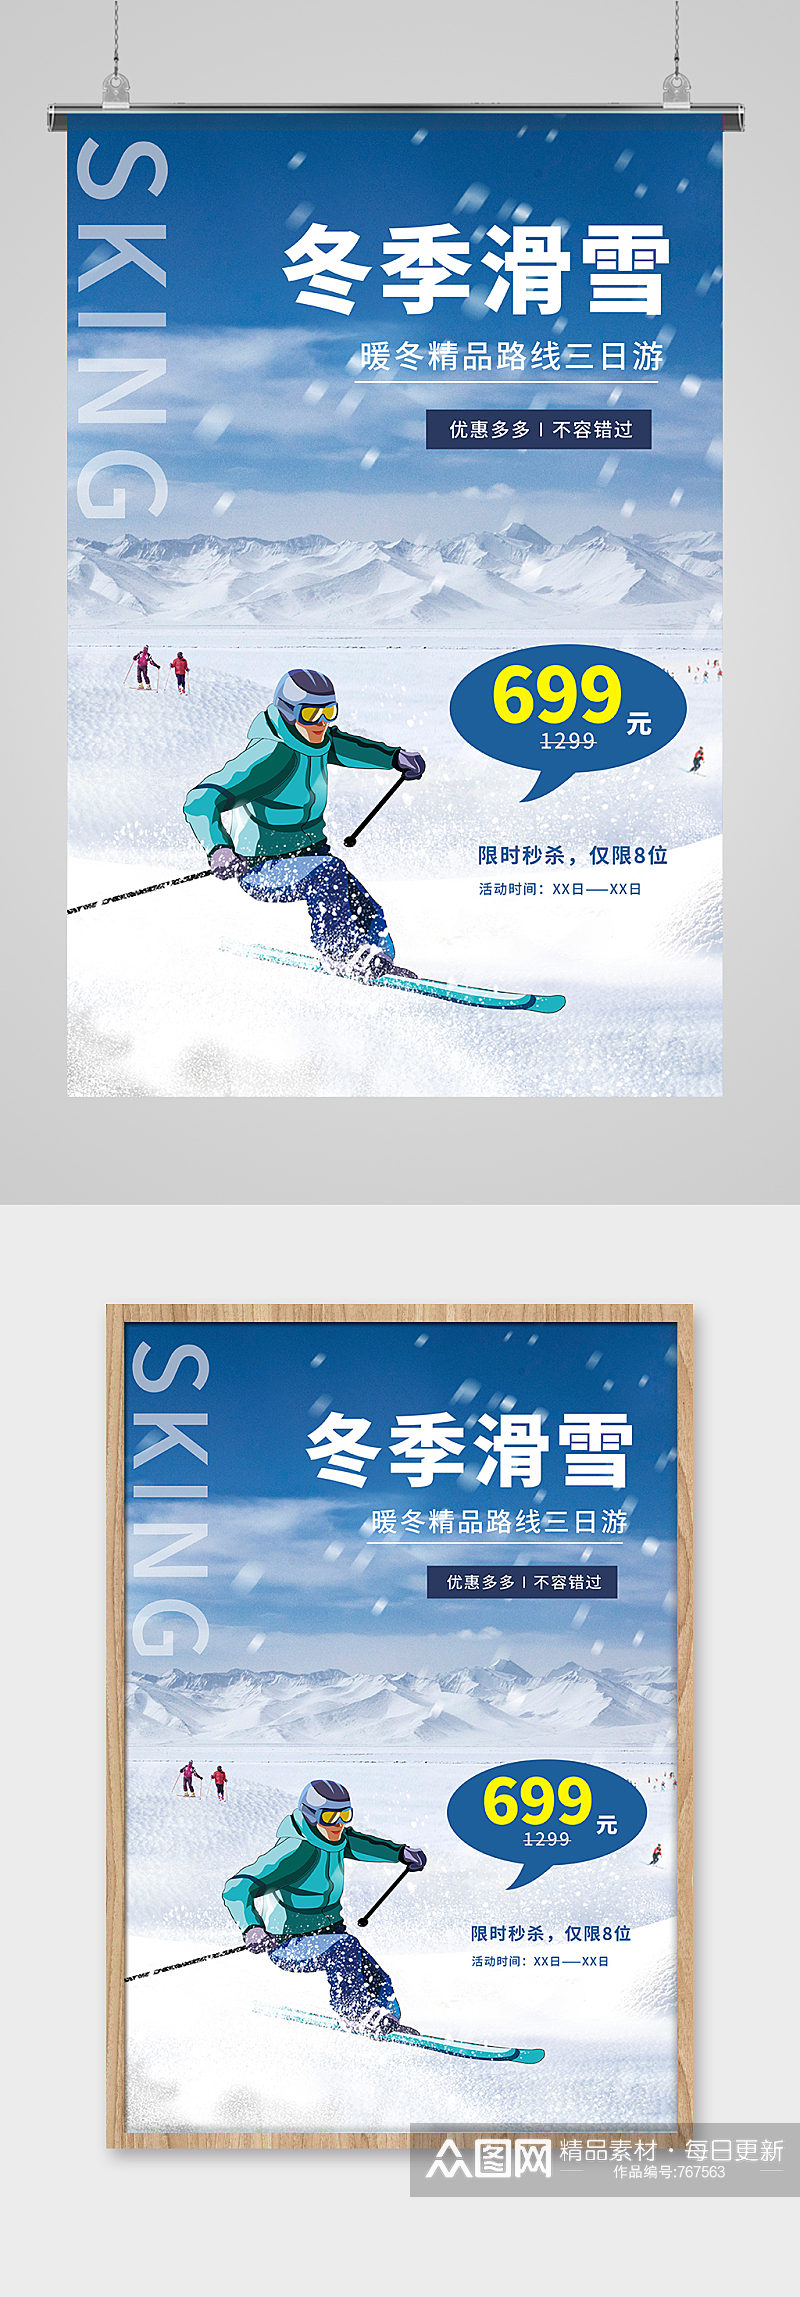 冬季旅游滑雪蓝色促销海报素材